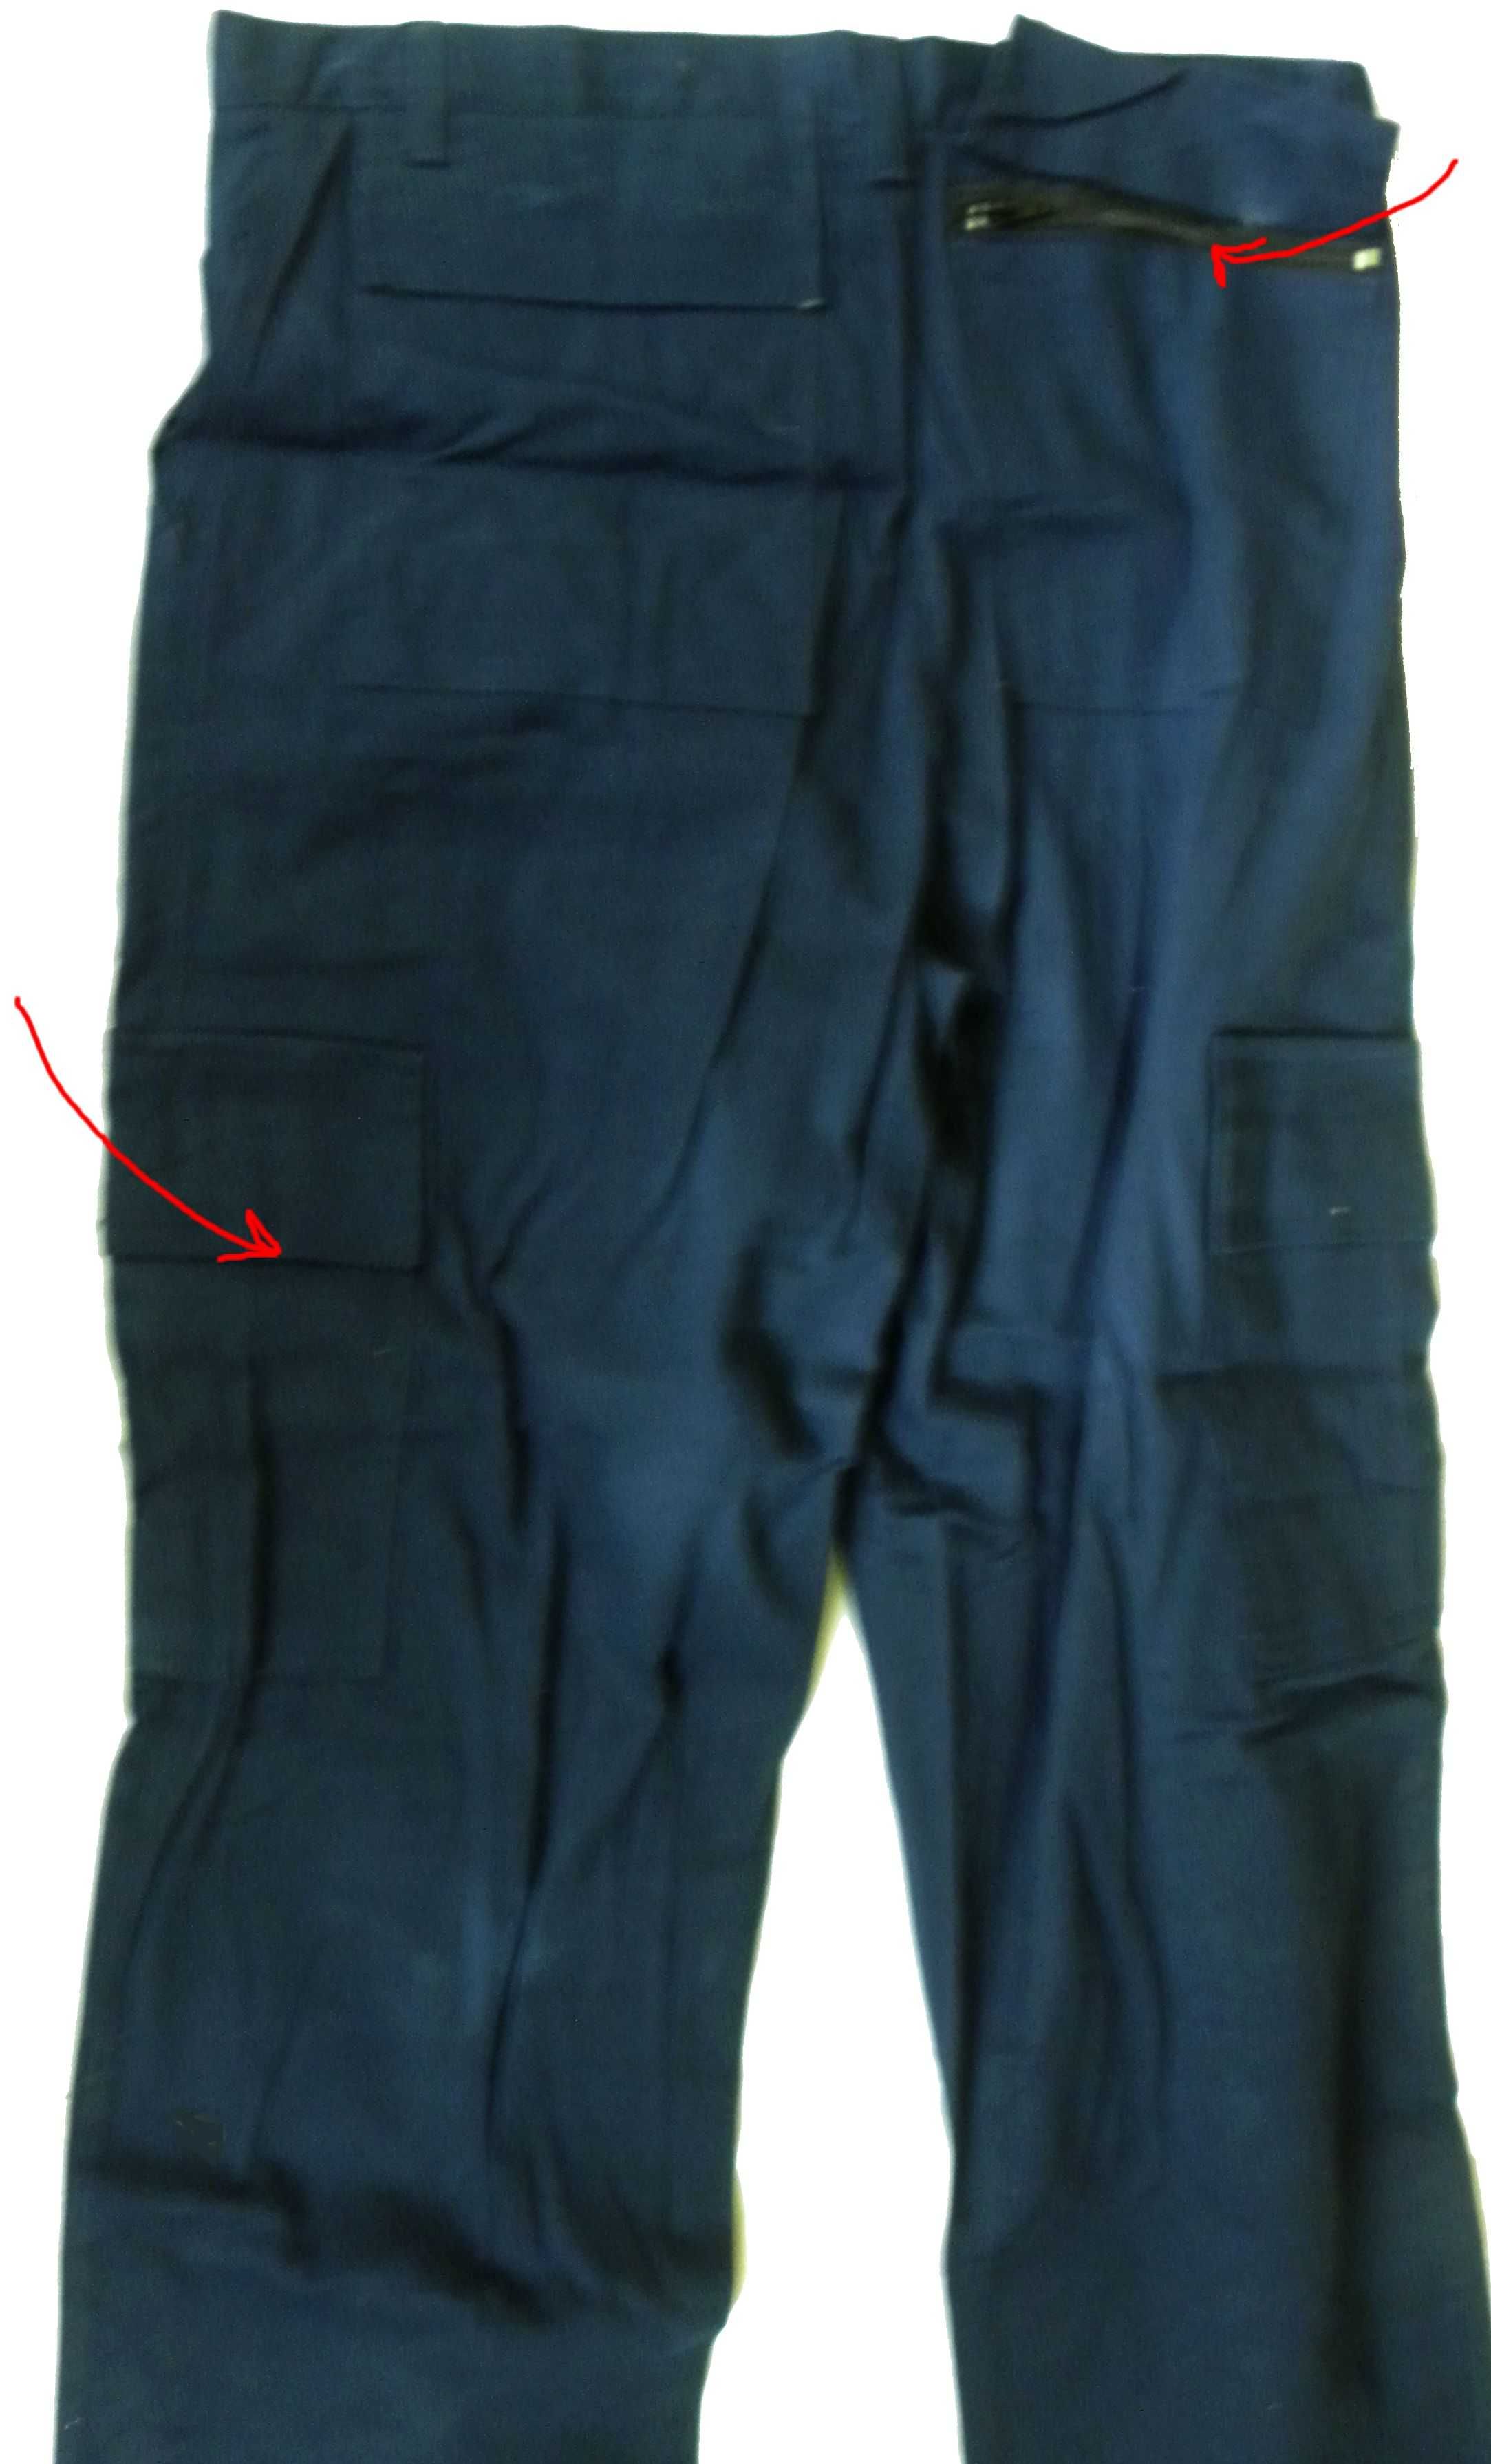 spodnie bawełniane Twil  granatowe bojówki  8szt